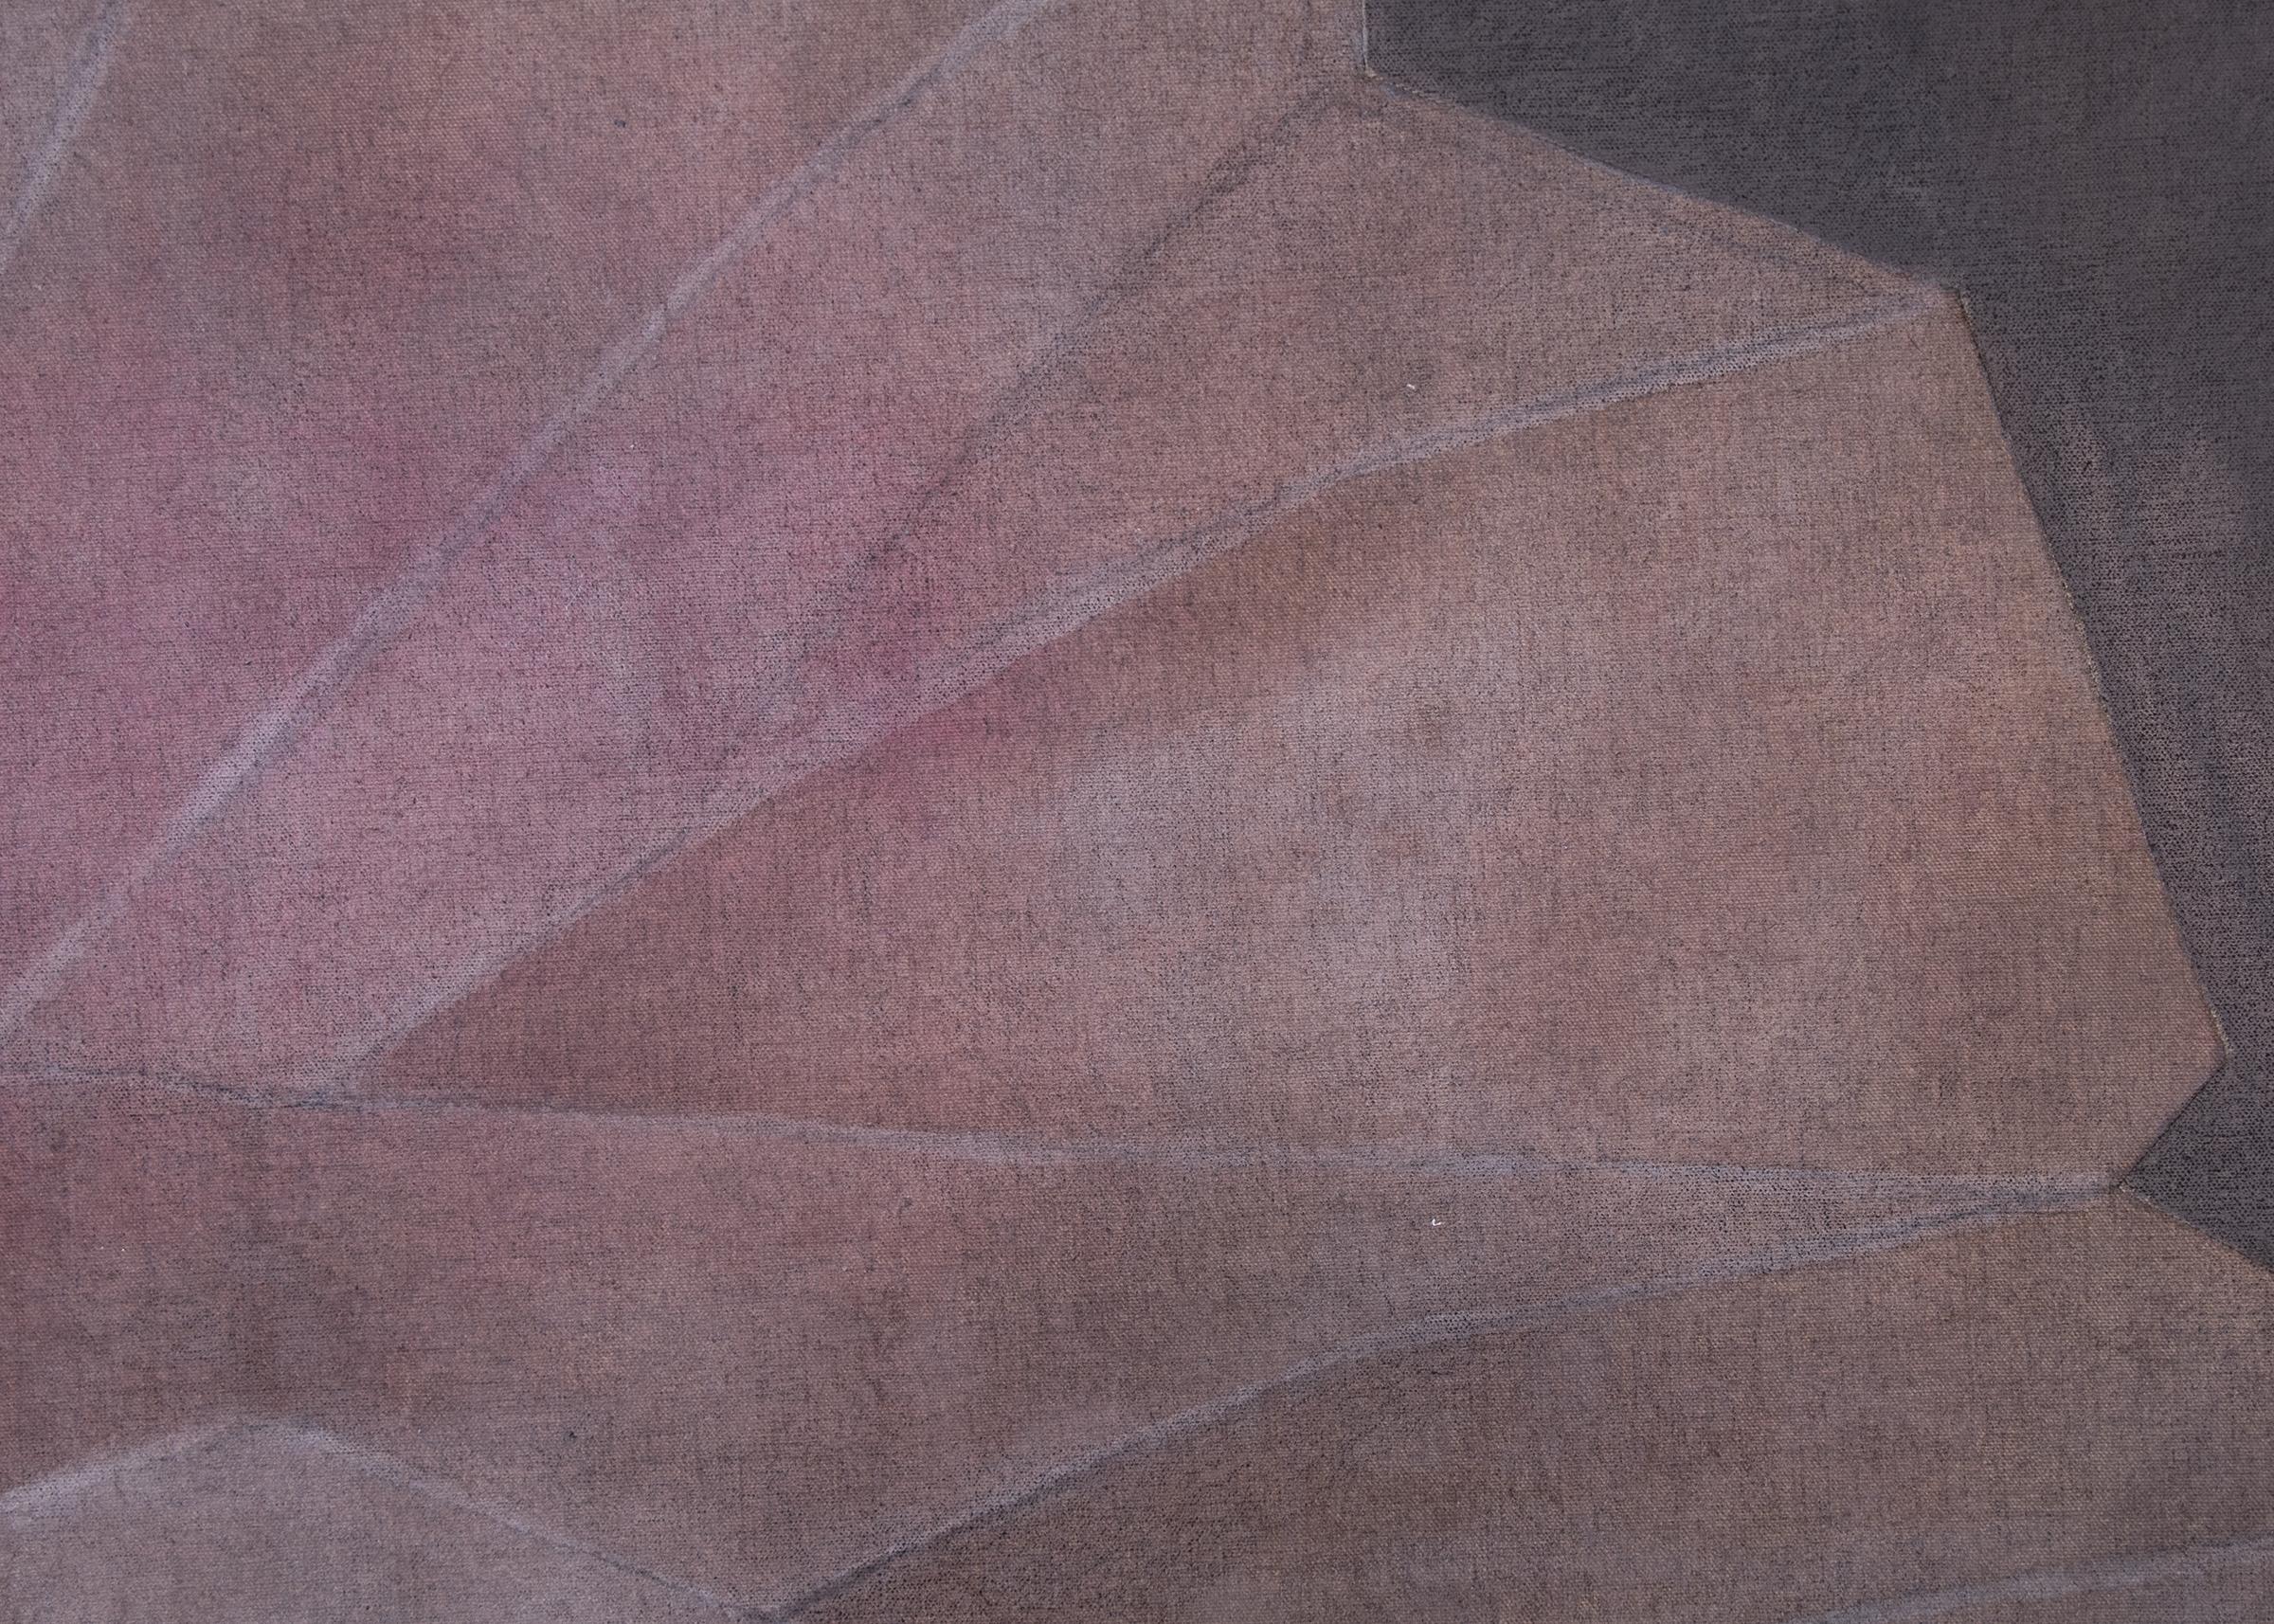 Peinture abstraite moderne du milieu du siècle dernier représentant des formations de cristaux par Margo Hoff (1910-2008), réalisée avec des collages d'acrylique et de toile dans des couleurs violettes et roses. La toile enveloppée est prête à être